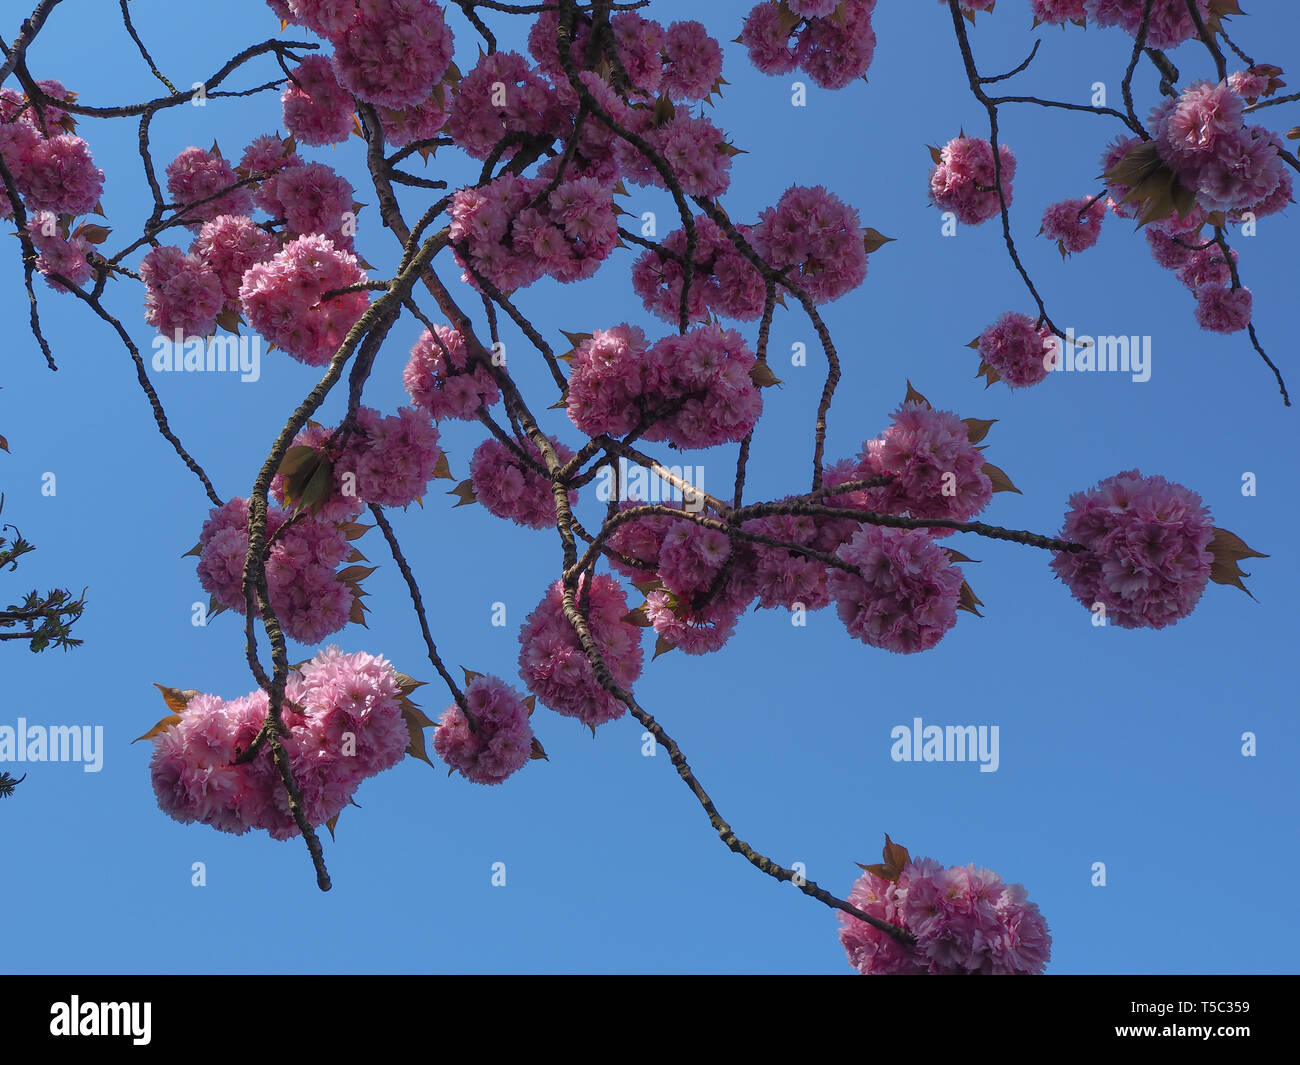 Di un bel colore rosa ciliegio sbocciare sui rami visto da sotto con un cielo azzurro sullo sfondo Foto Stock